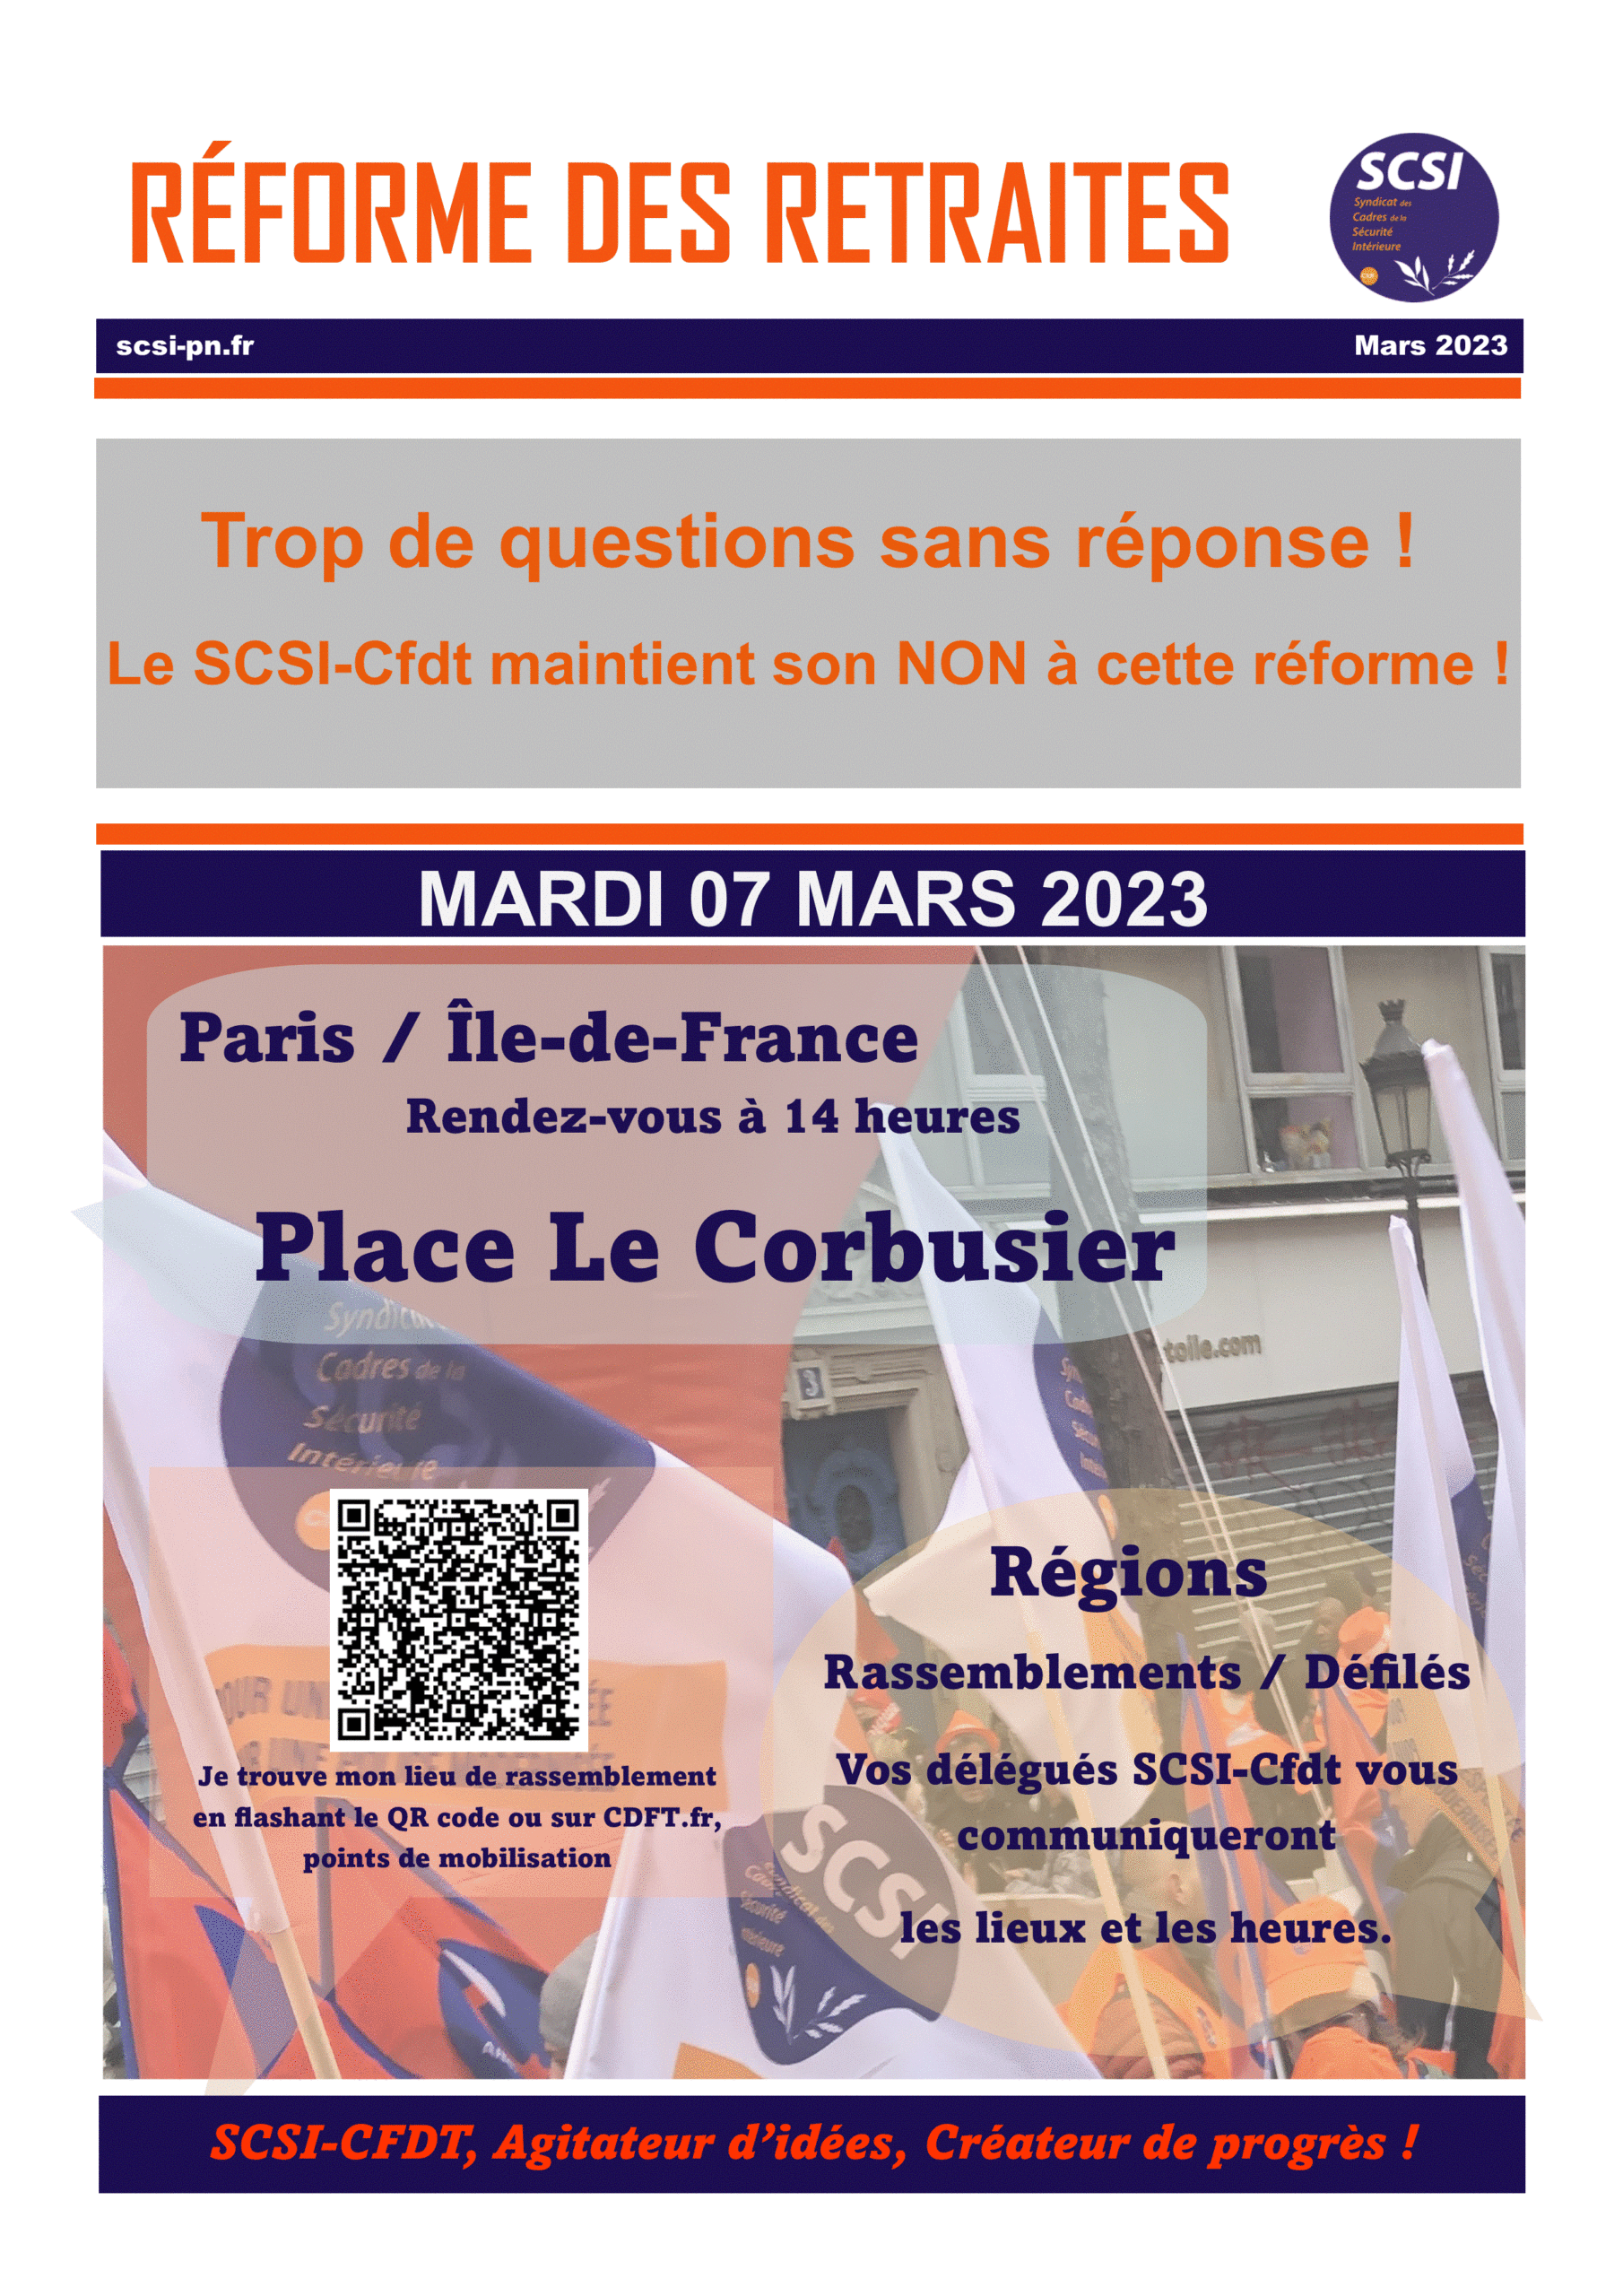 RÉFORME DES RETRAITES : MANIFESTATION 07 MARS 2023